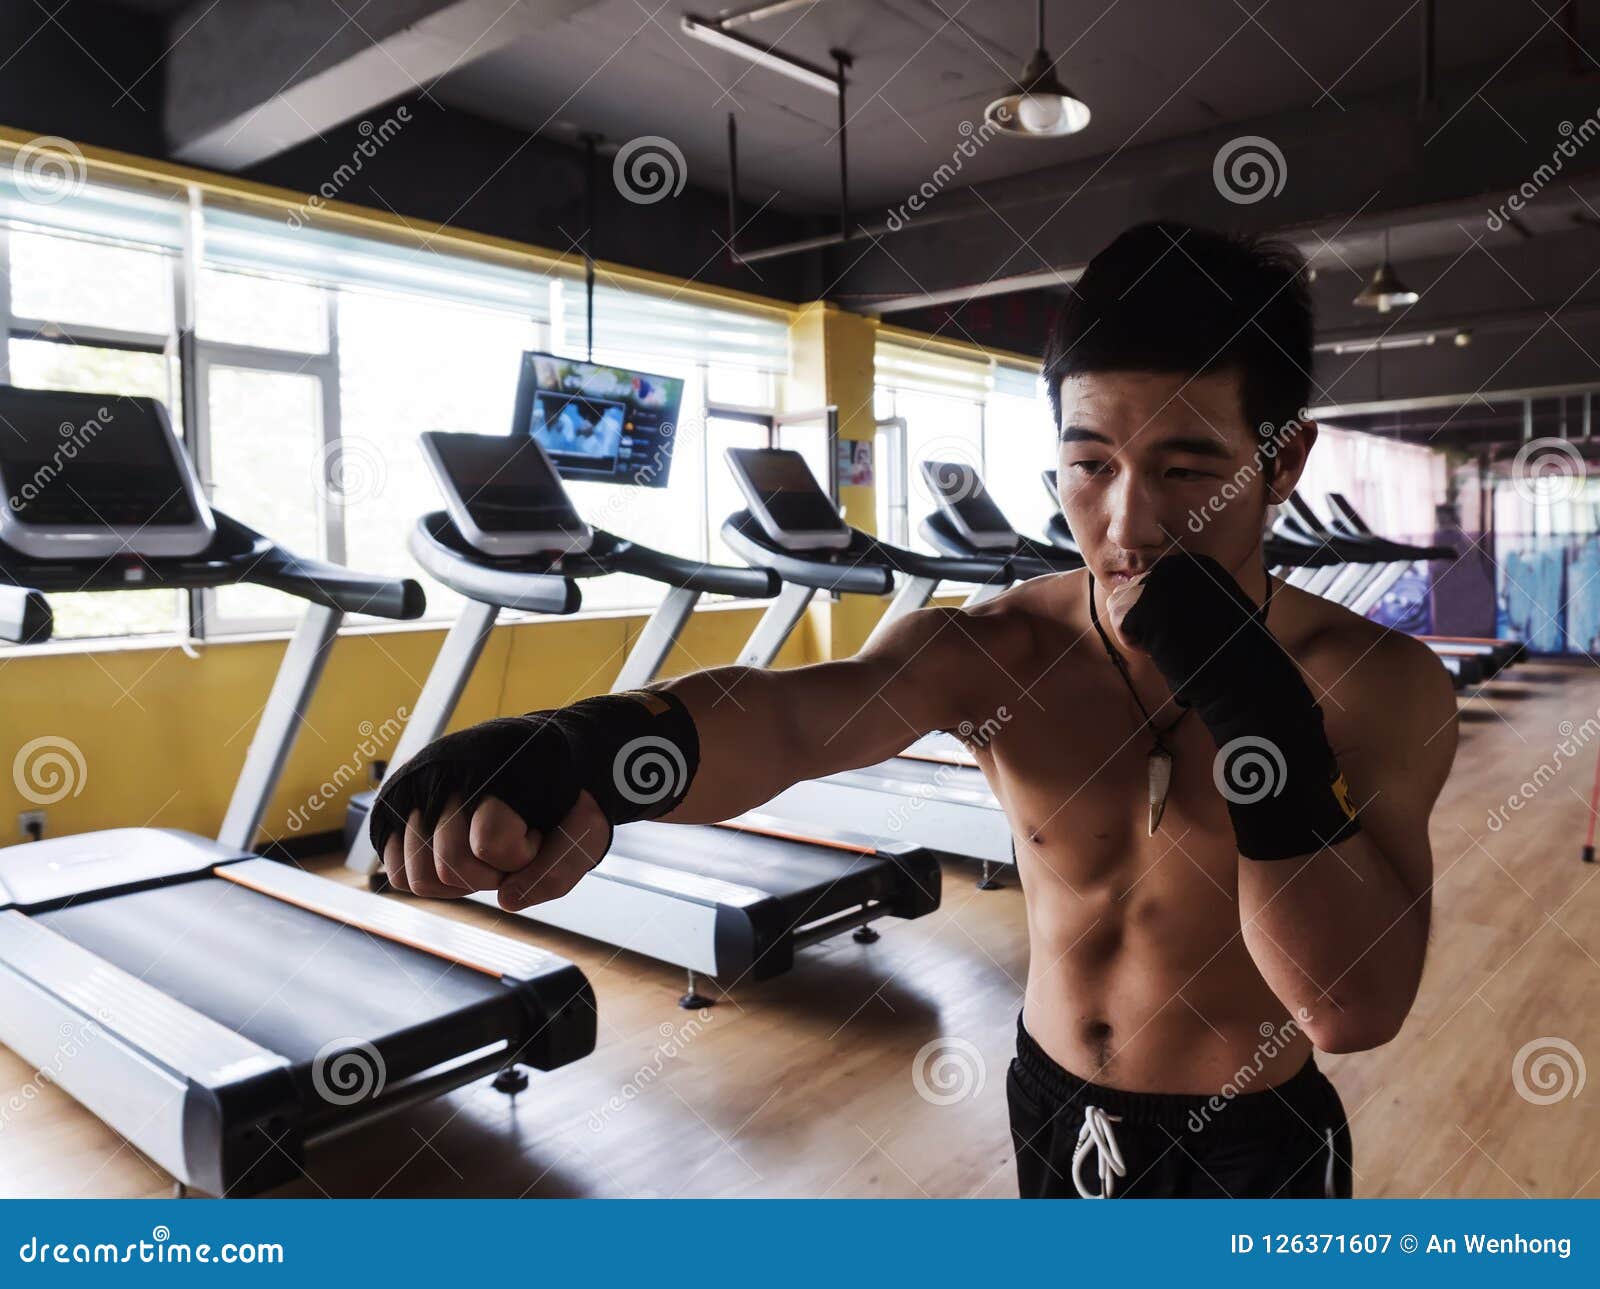 asians man boxing at gym